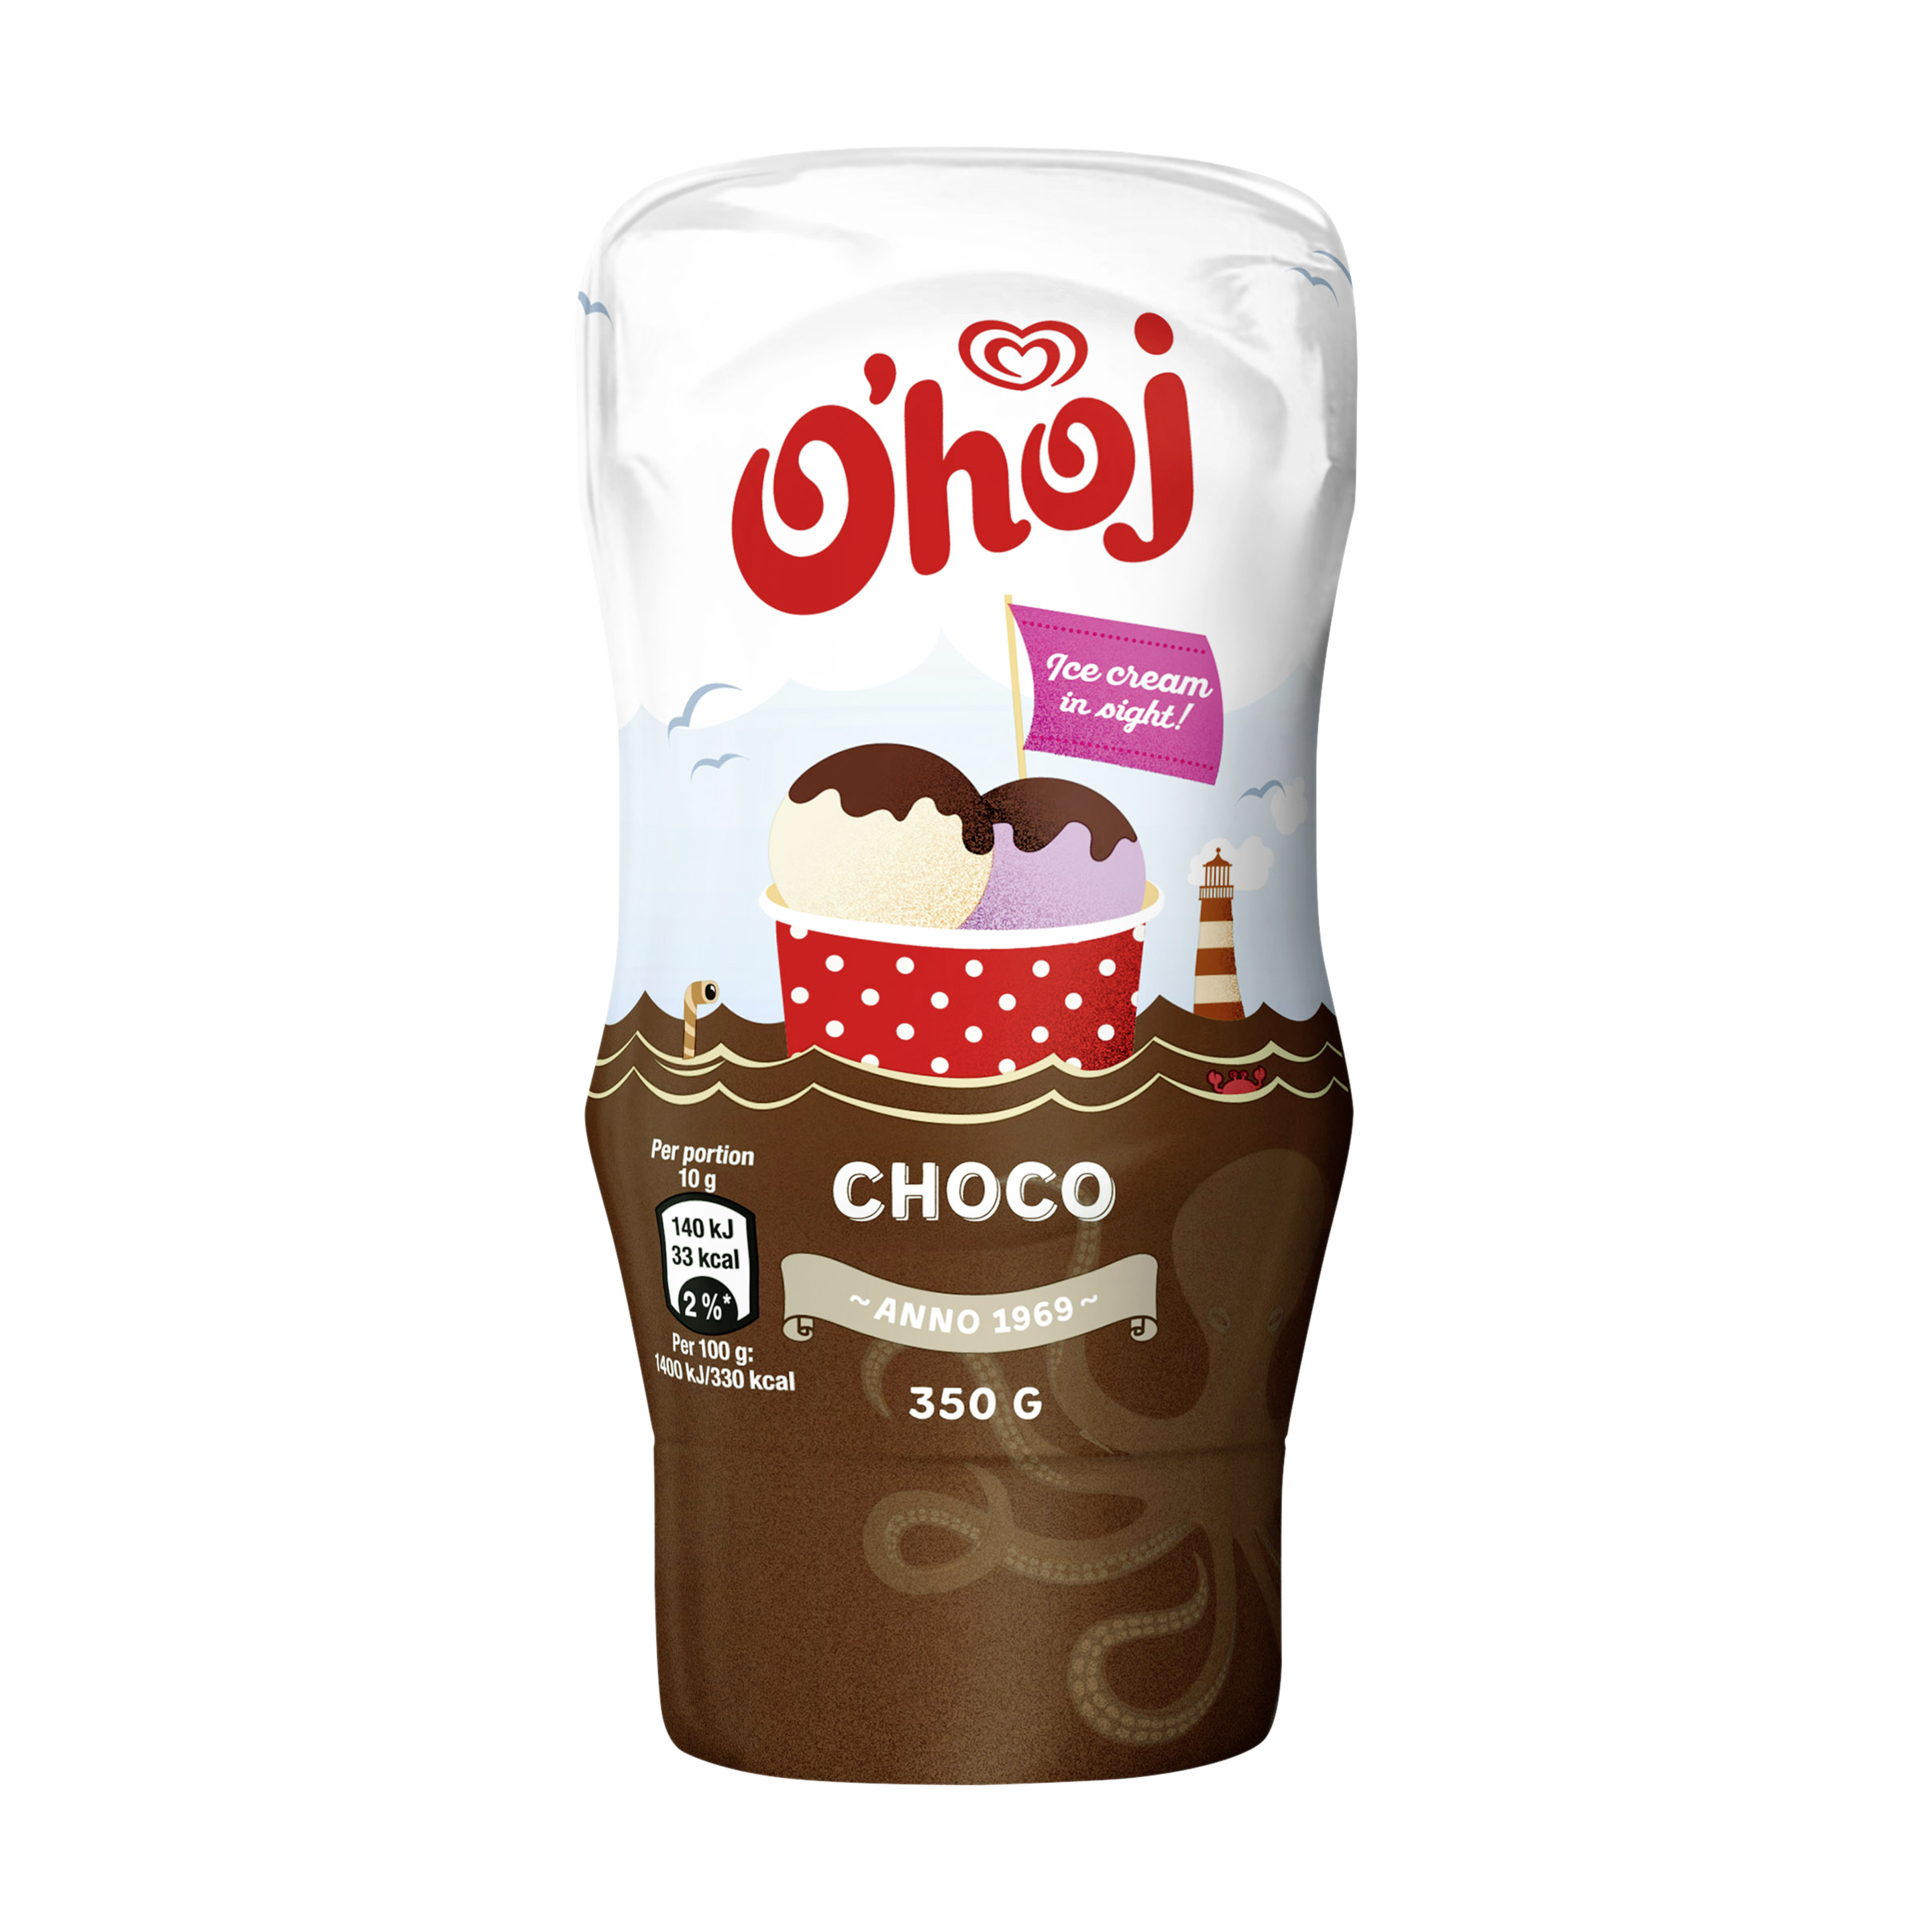 O’hoj Choco